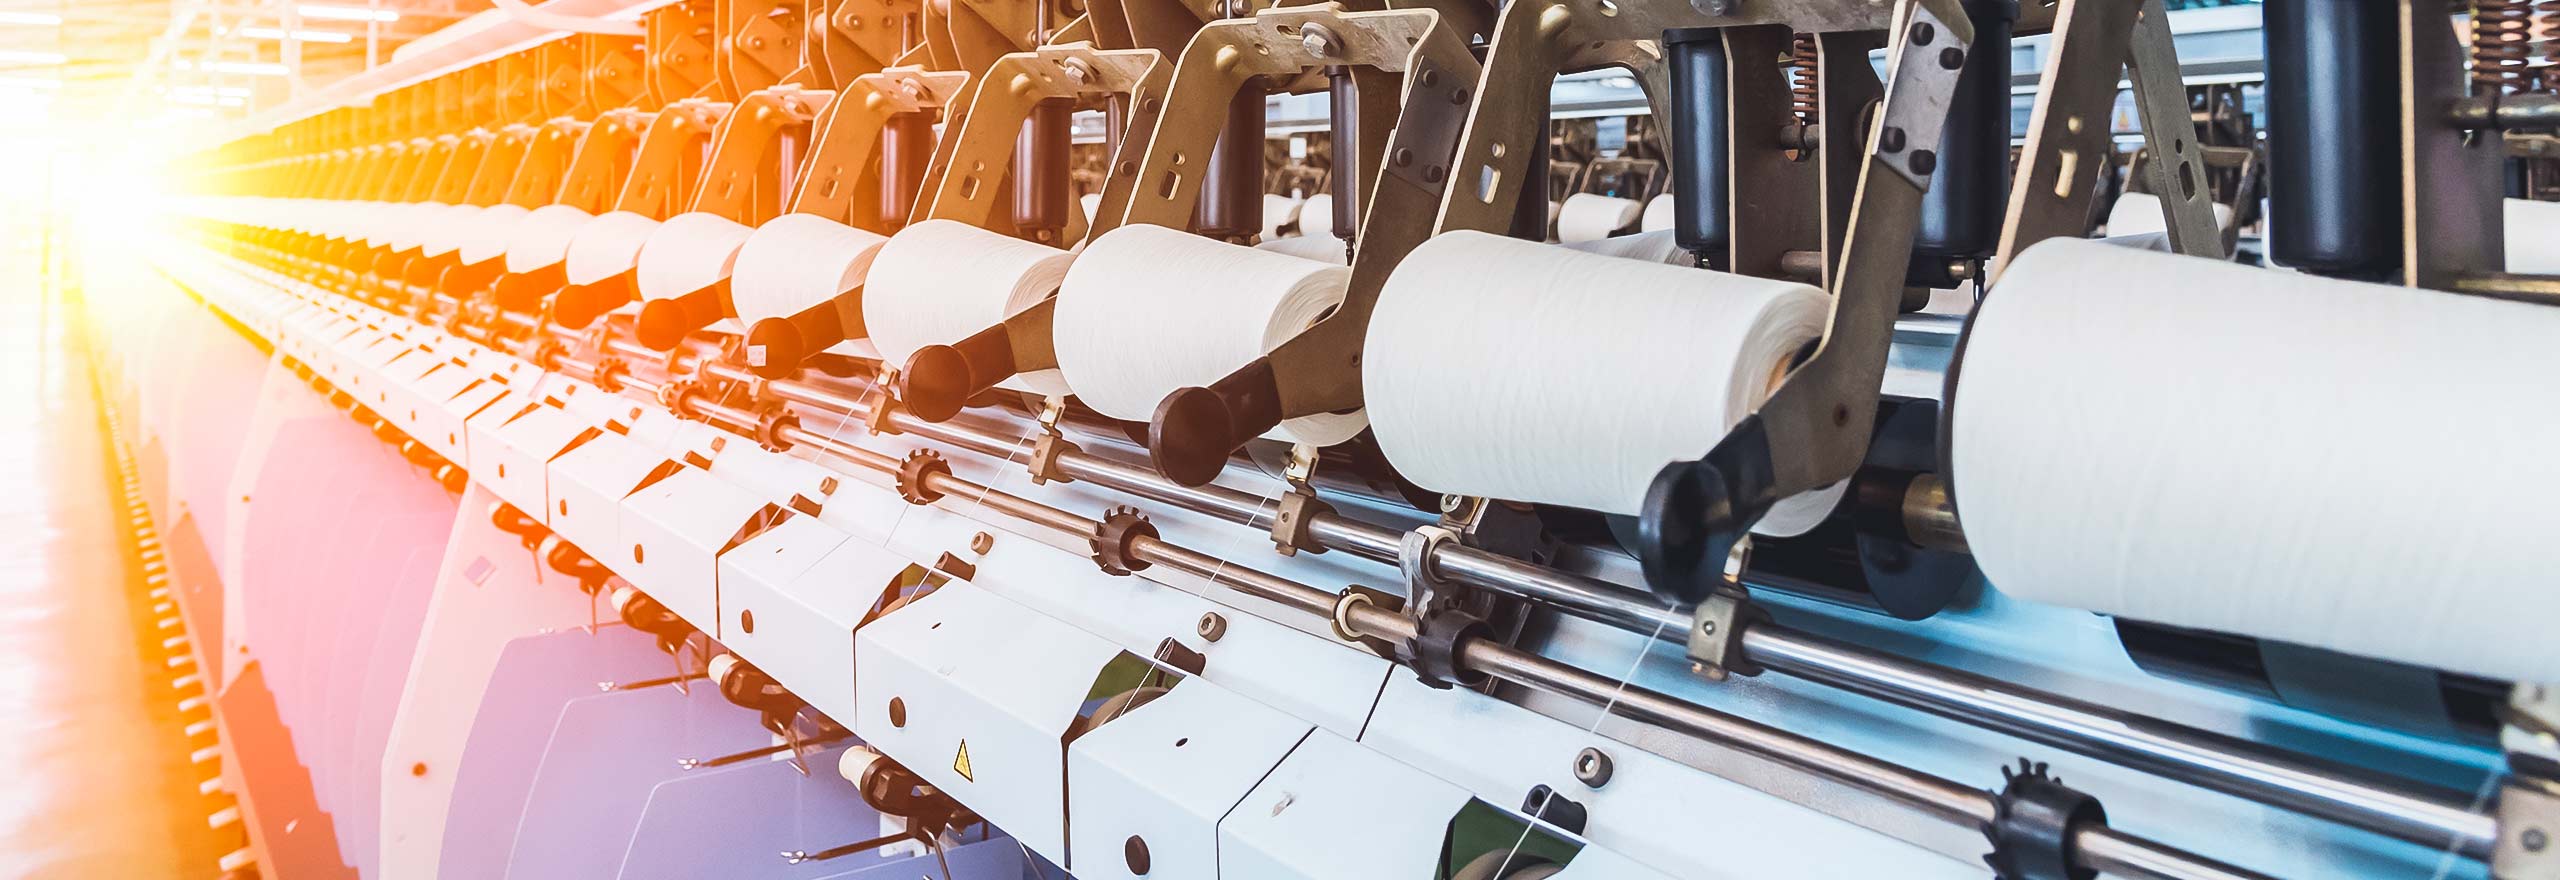 Produção de toalhas de papel na instalação de fabricação